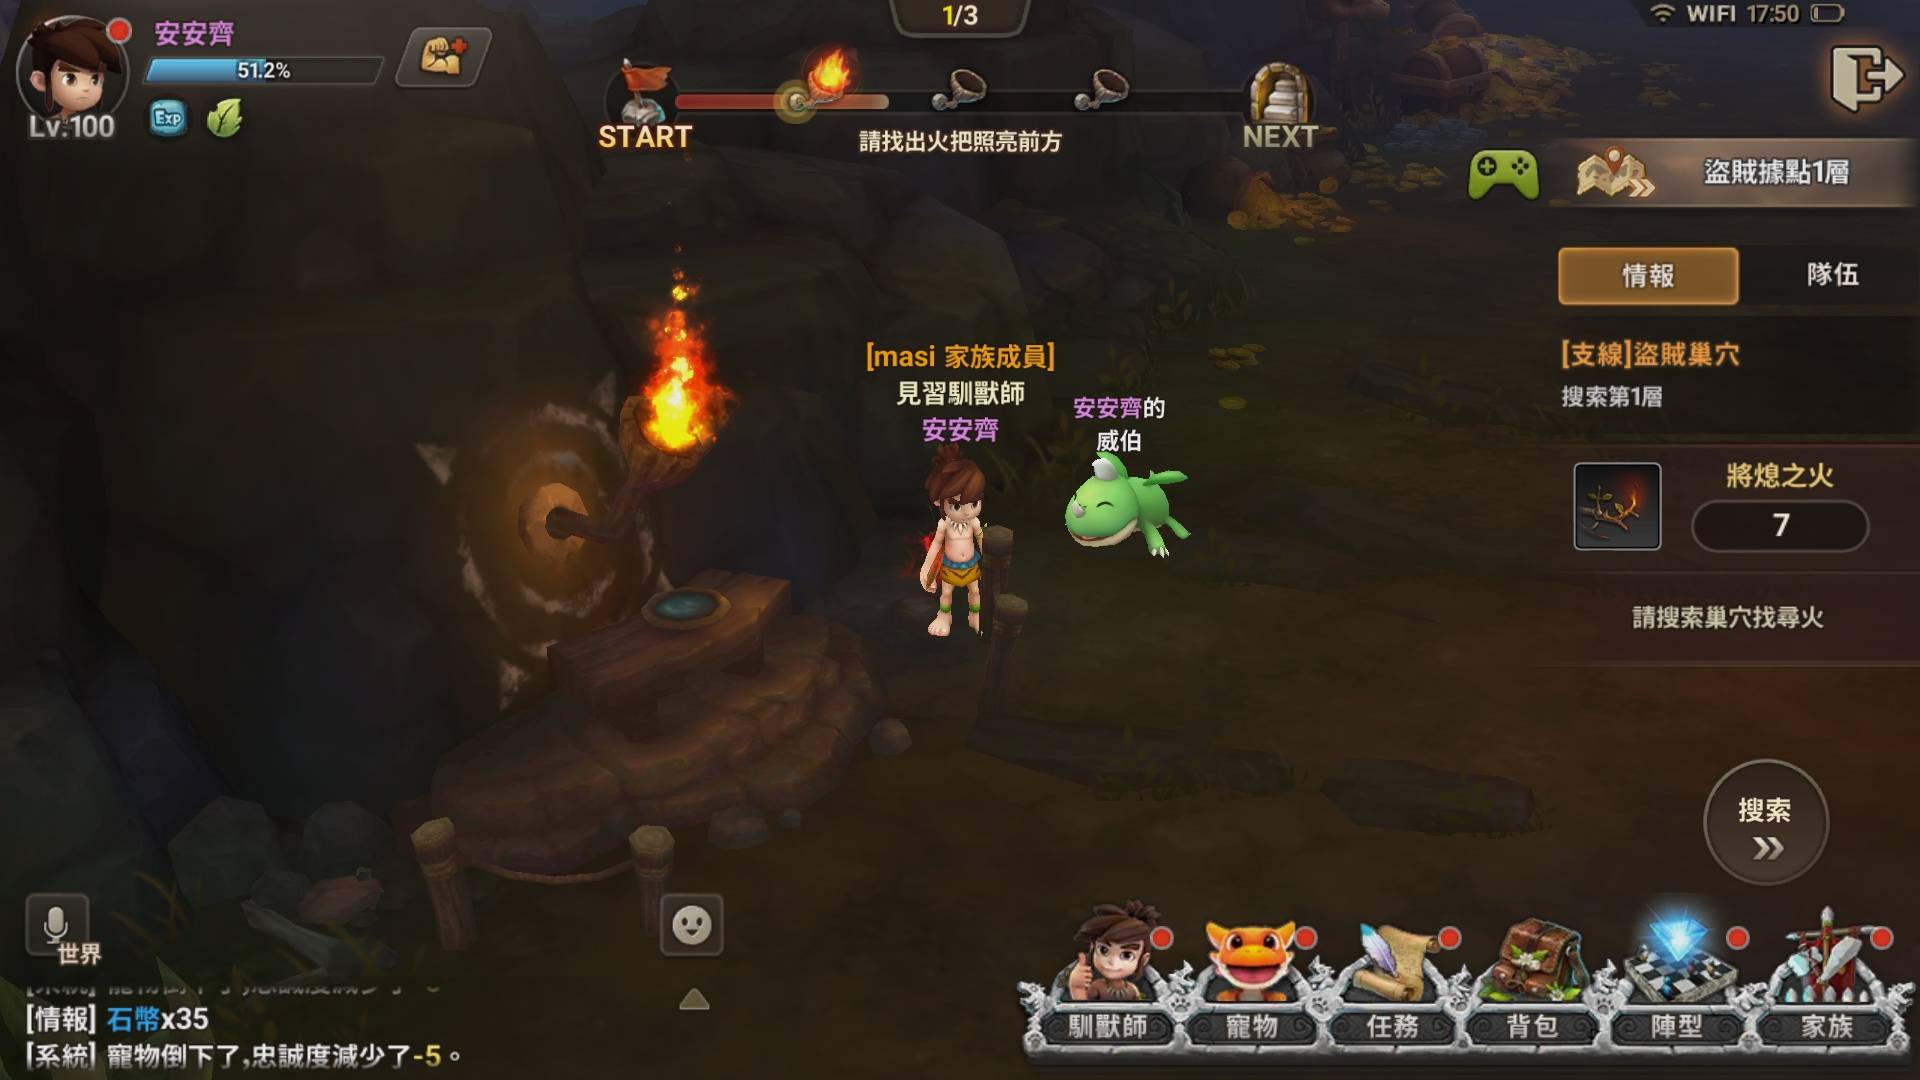 玩家可蒐集火種並點燃火把，點滿一定數量即可前往下個層級。